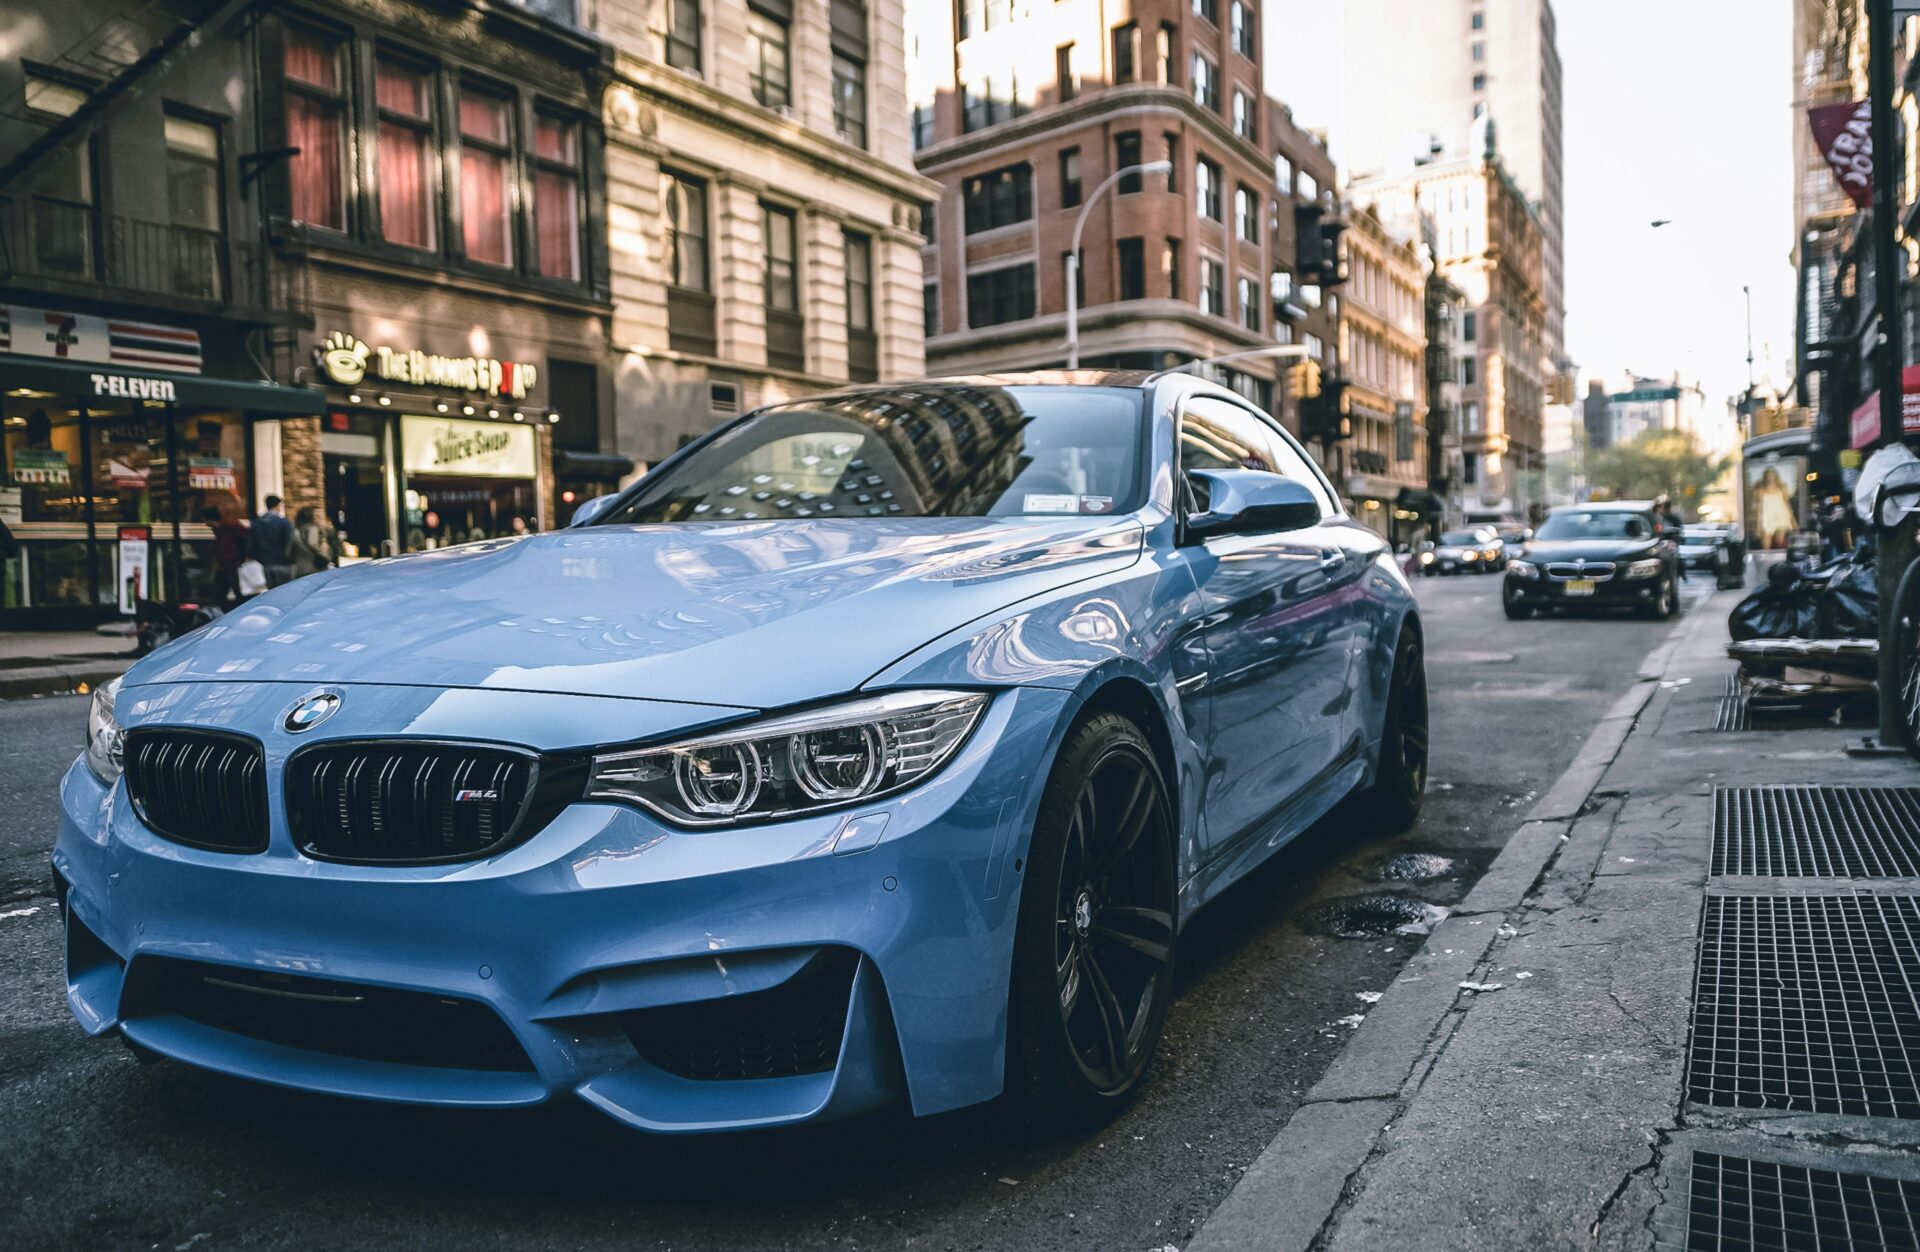 BMW объявили о конце эры автомобилей с механическими коробками